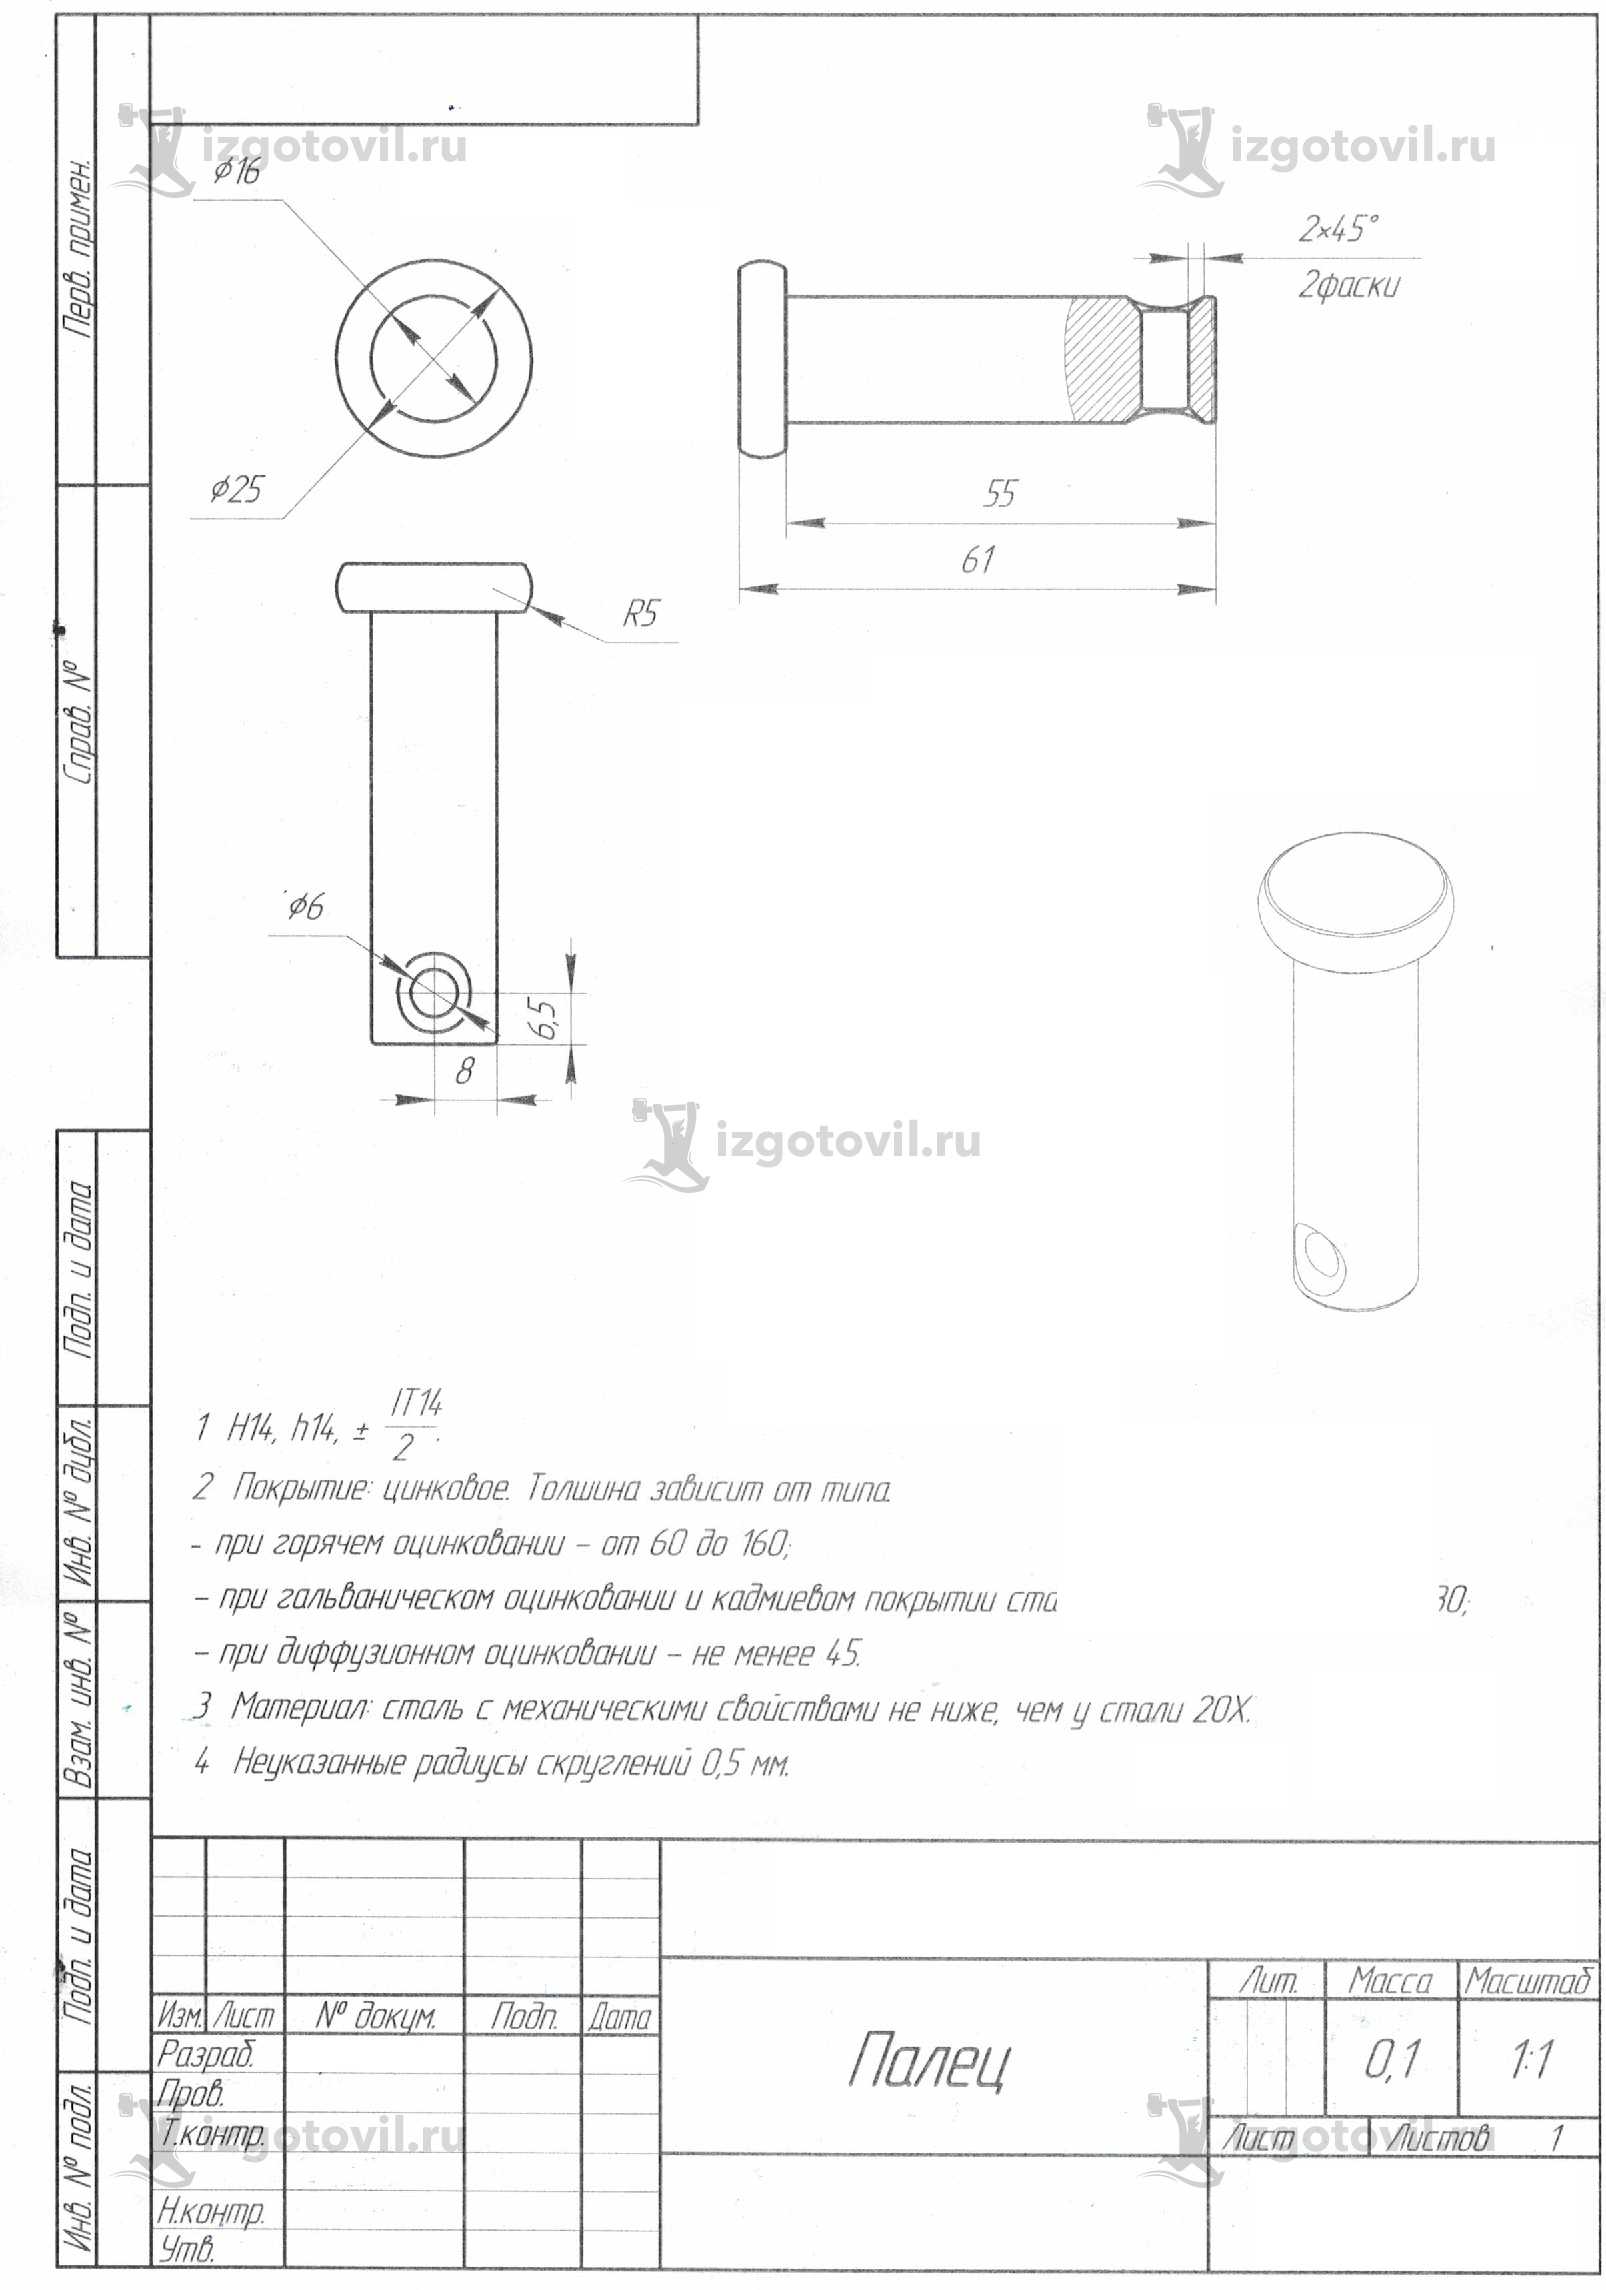 Токарная обработка ЧПУ: изготовление пальца Ф25х61мм.